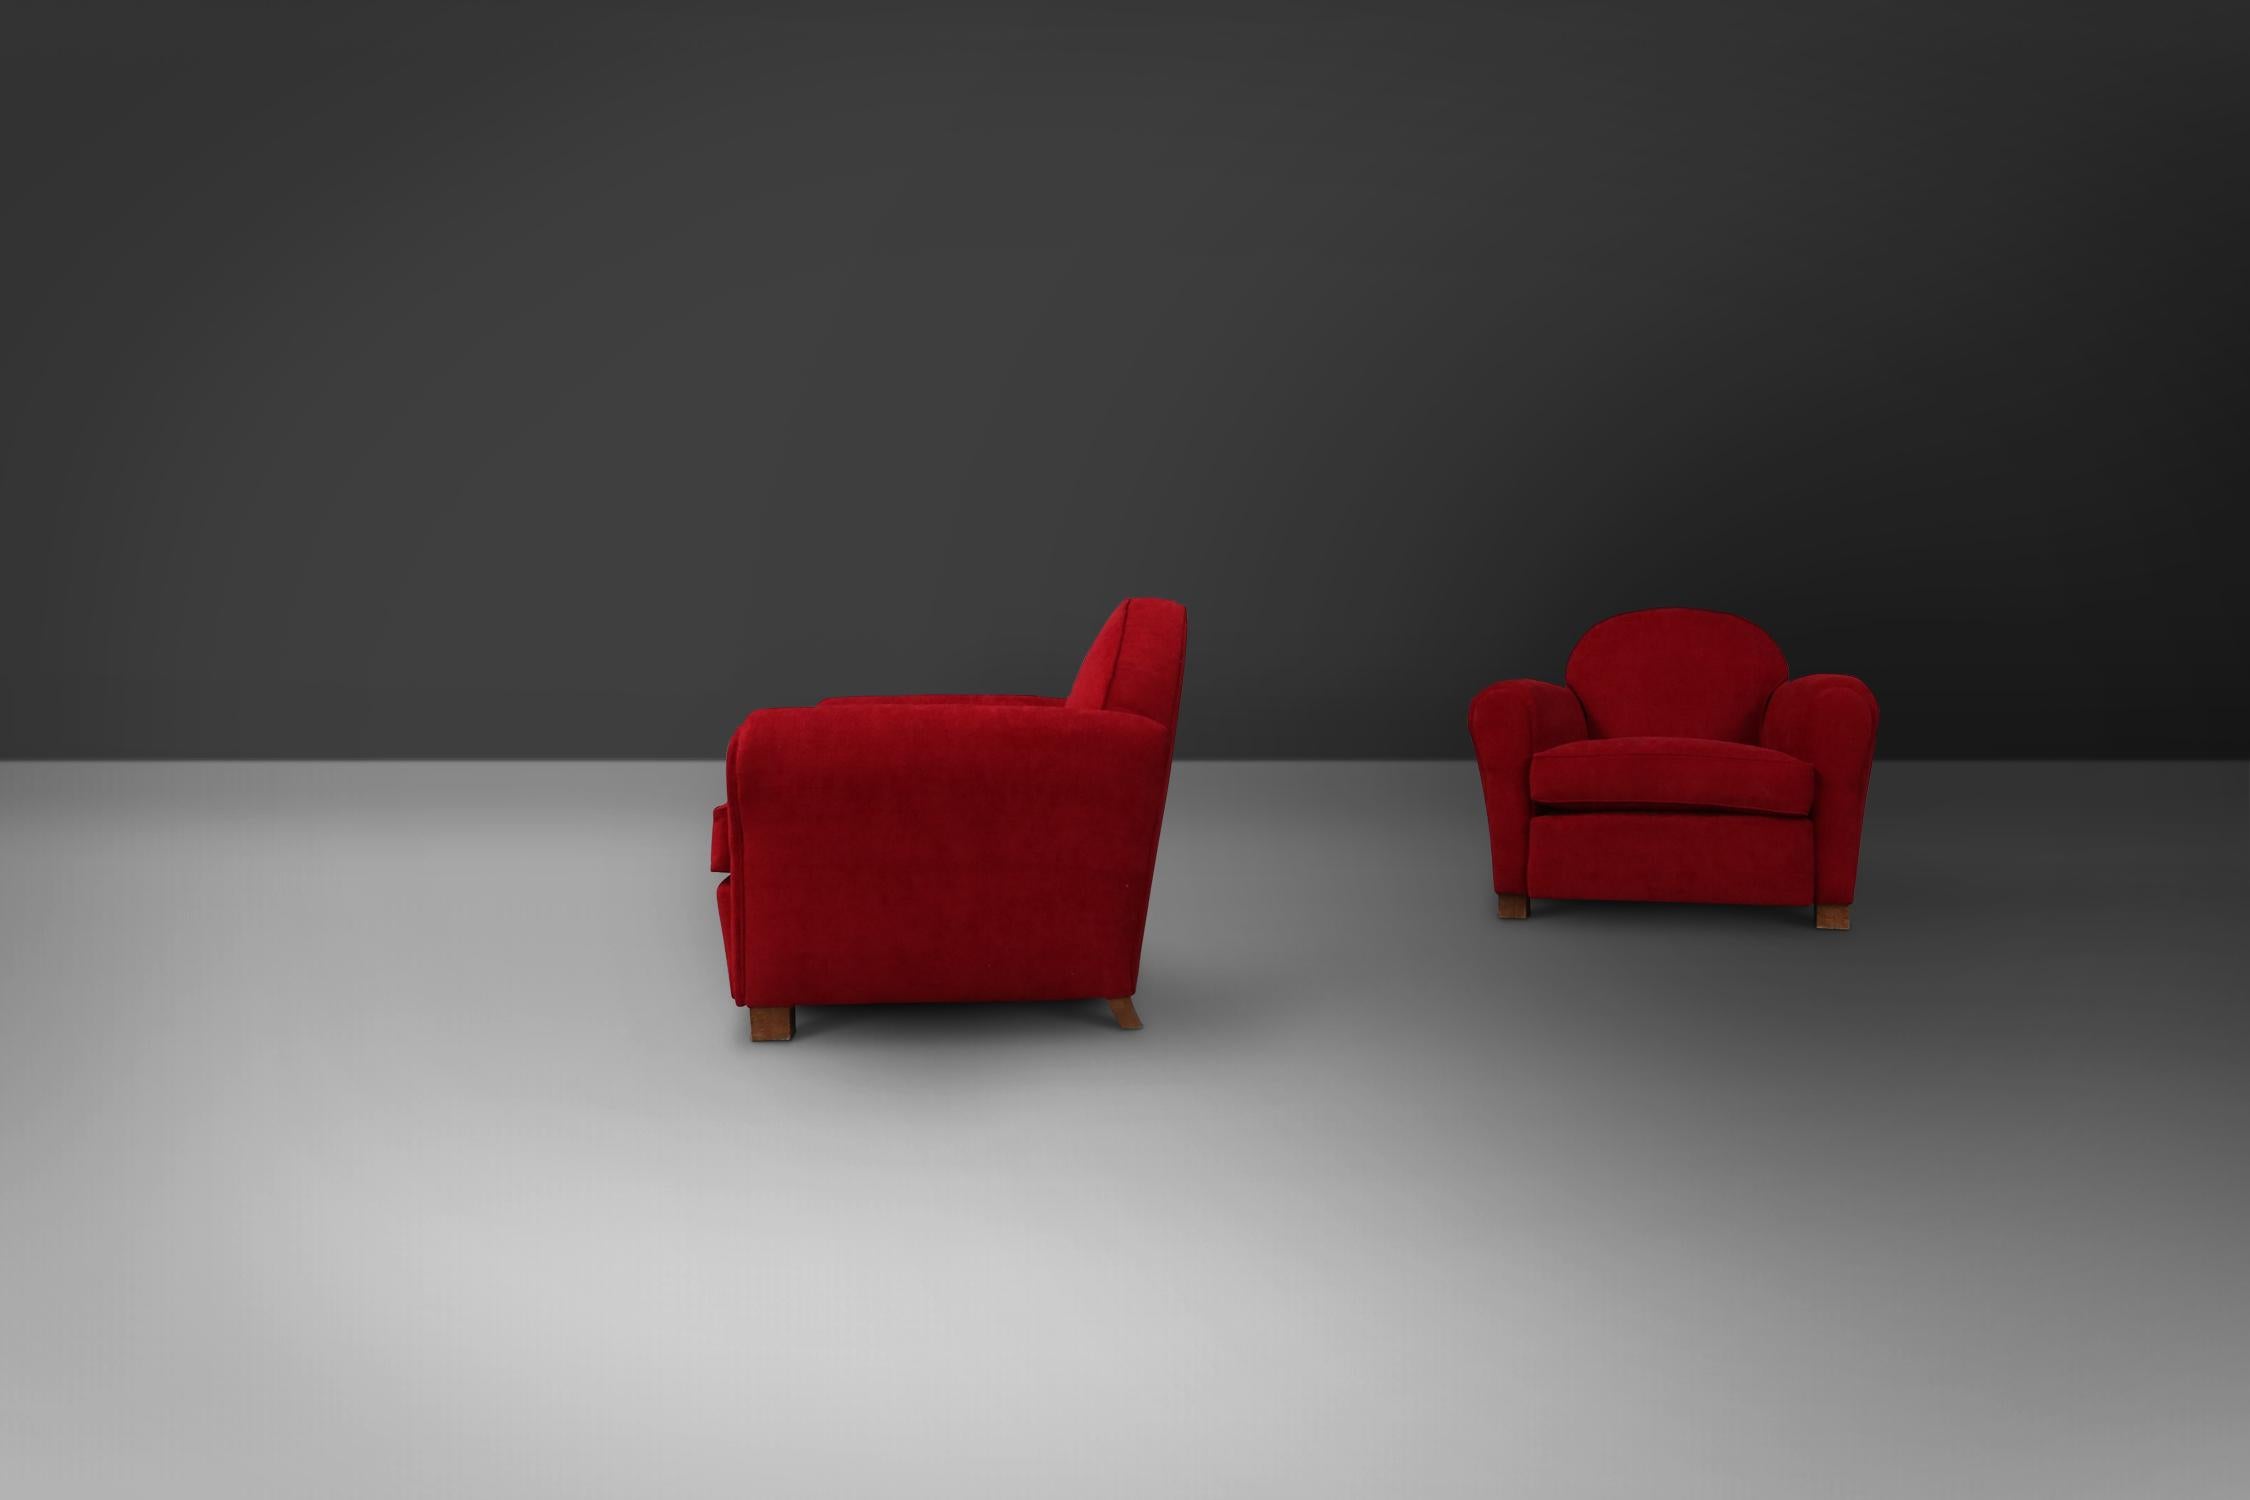 maroon velvet chair